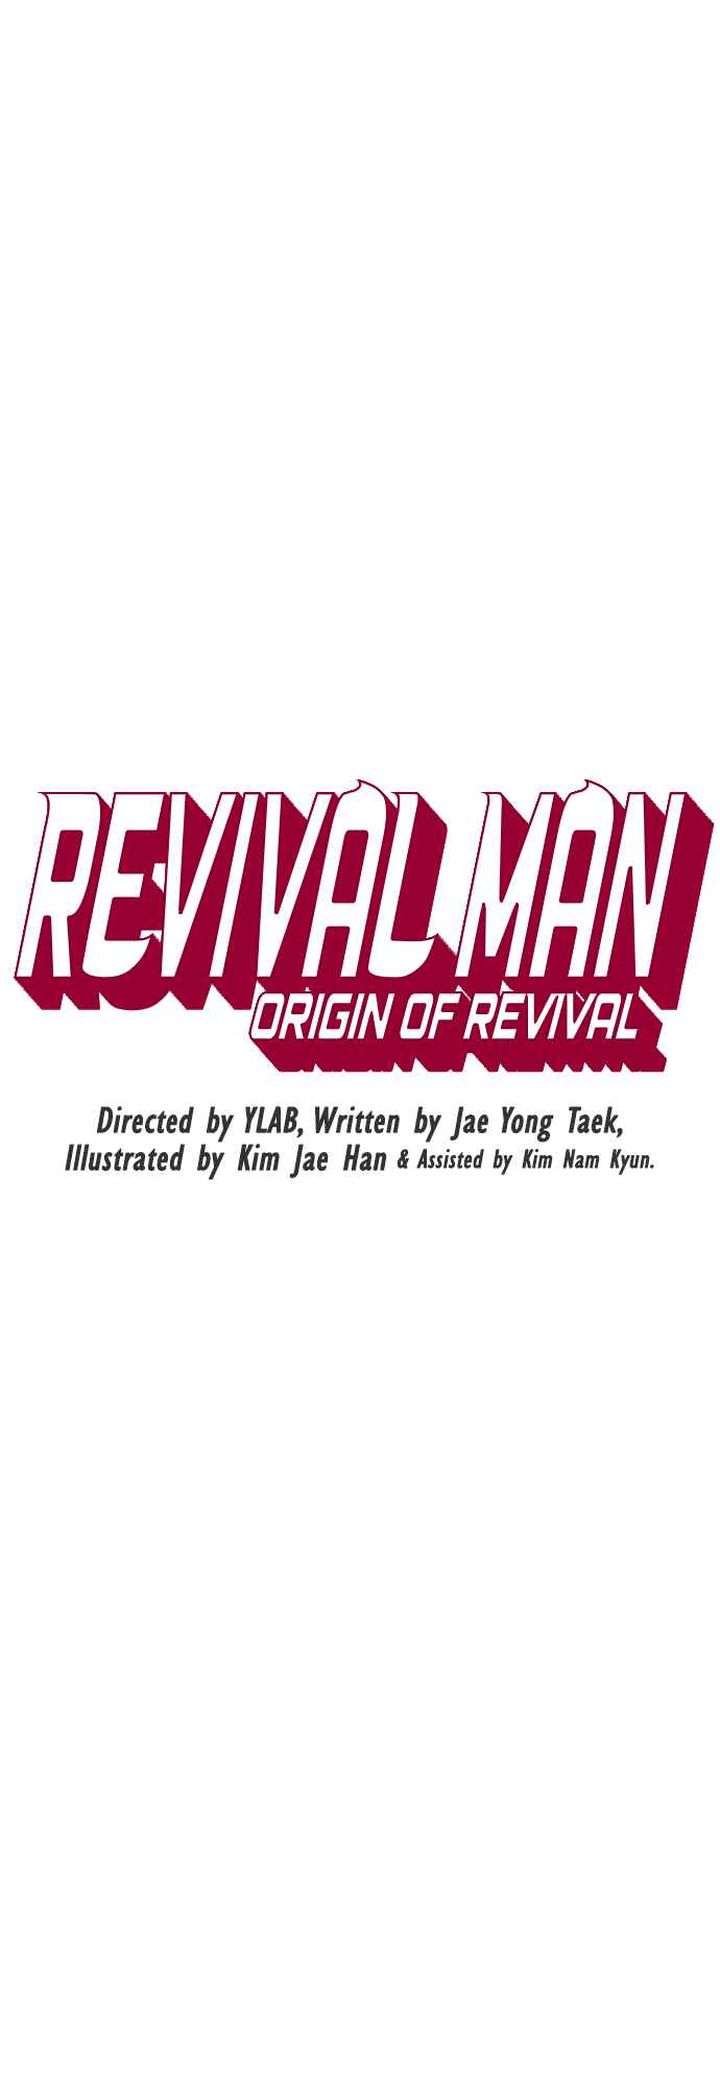 revival_man_159_9